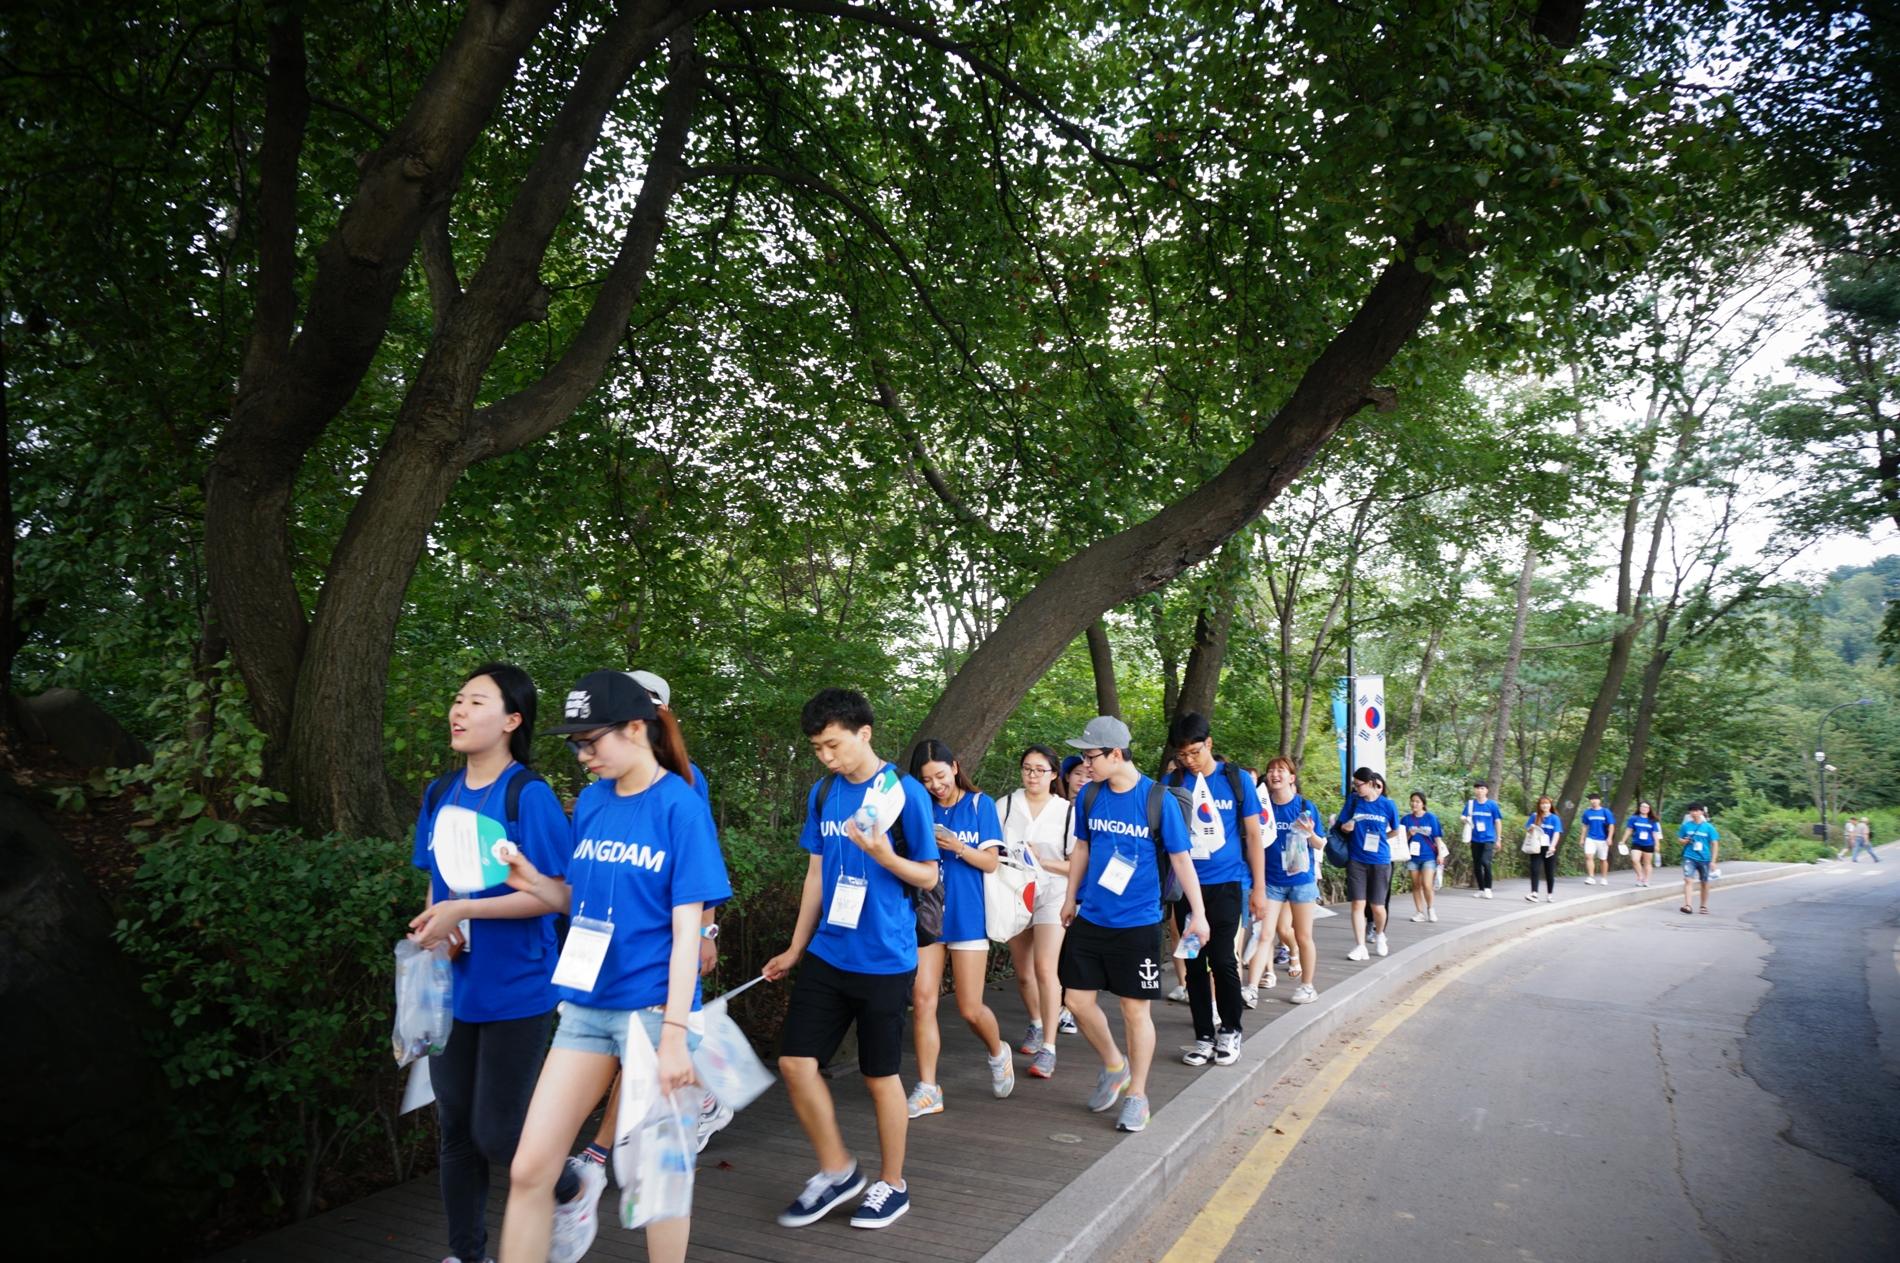 아산장학생은 나눔문화 확산을 위해 8.13일과 14일 한양도성 걷기 행사를 개최했습니다.